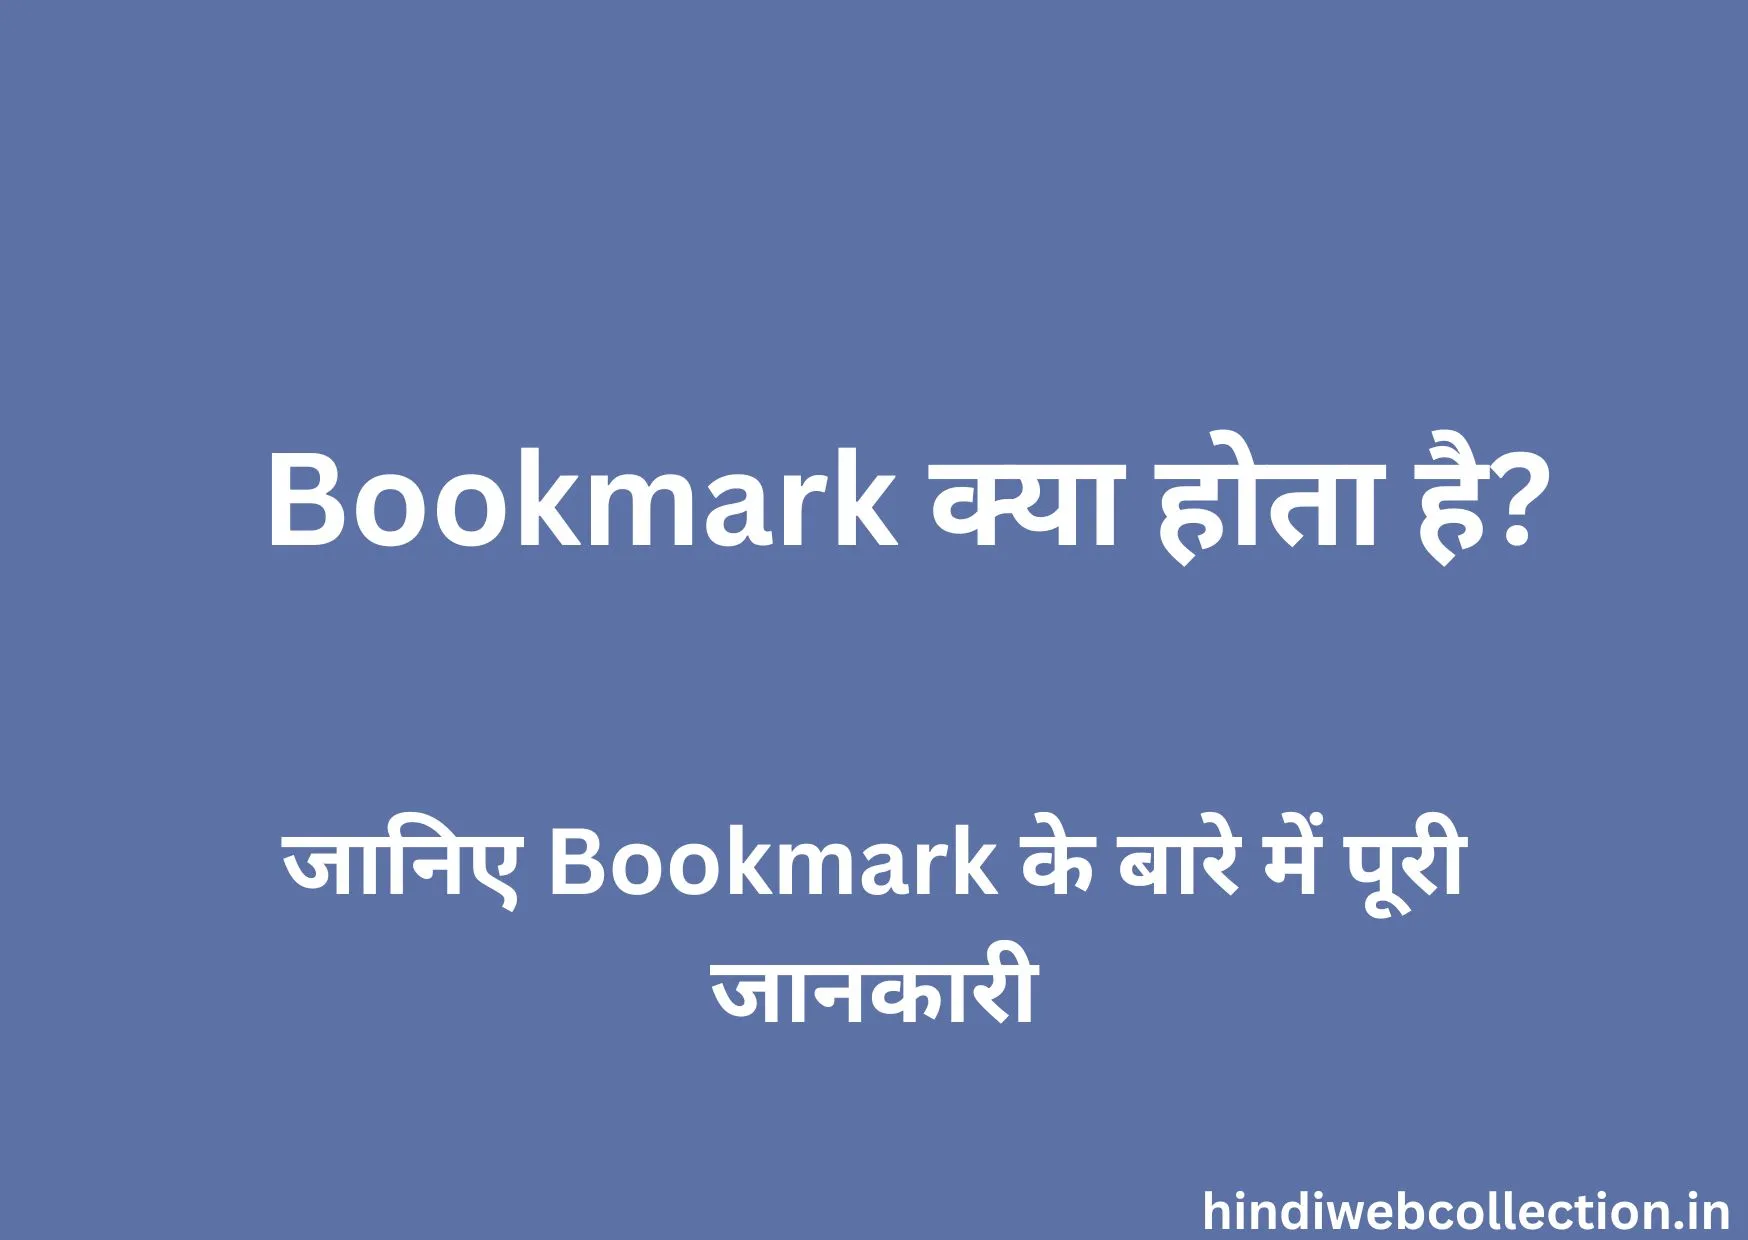 Bookmark Kya Hota Hai